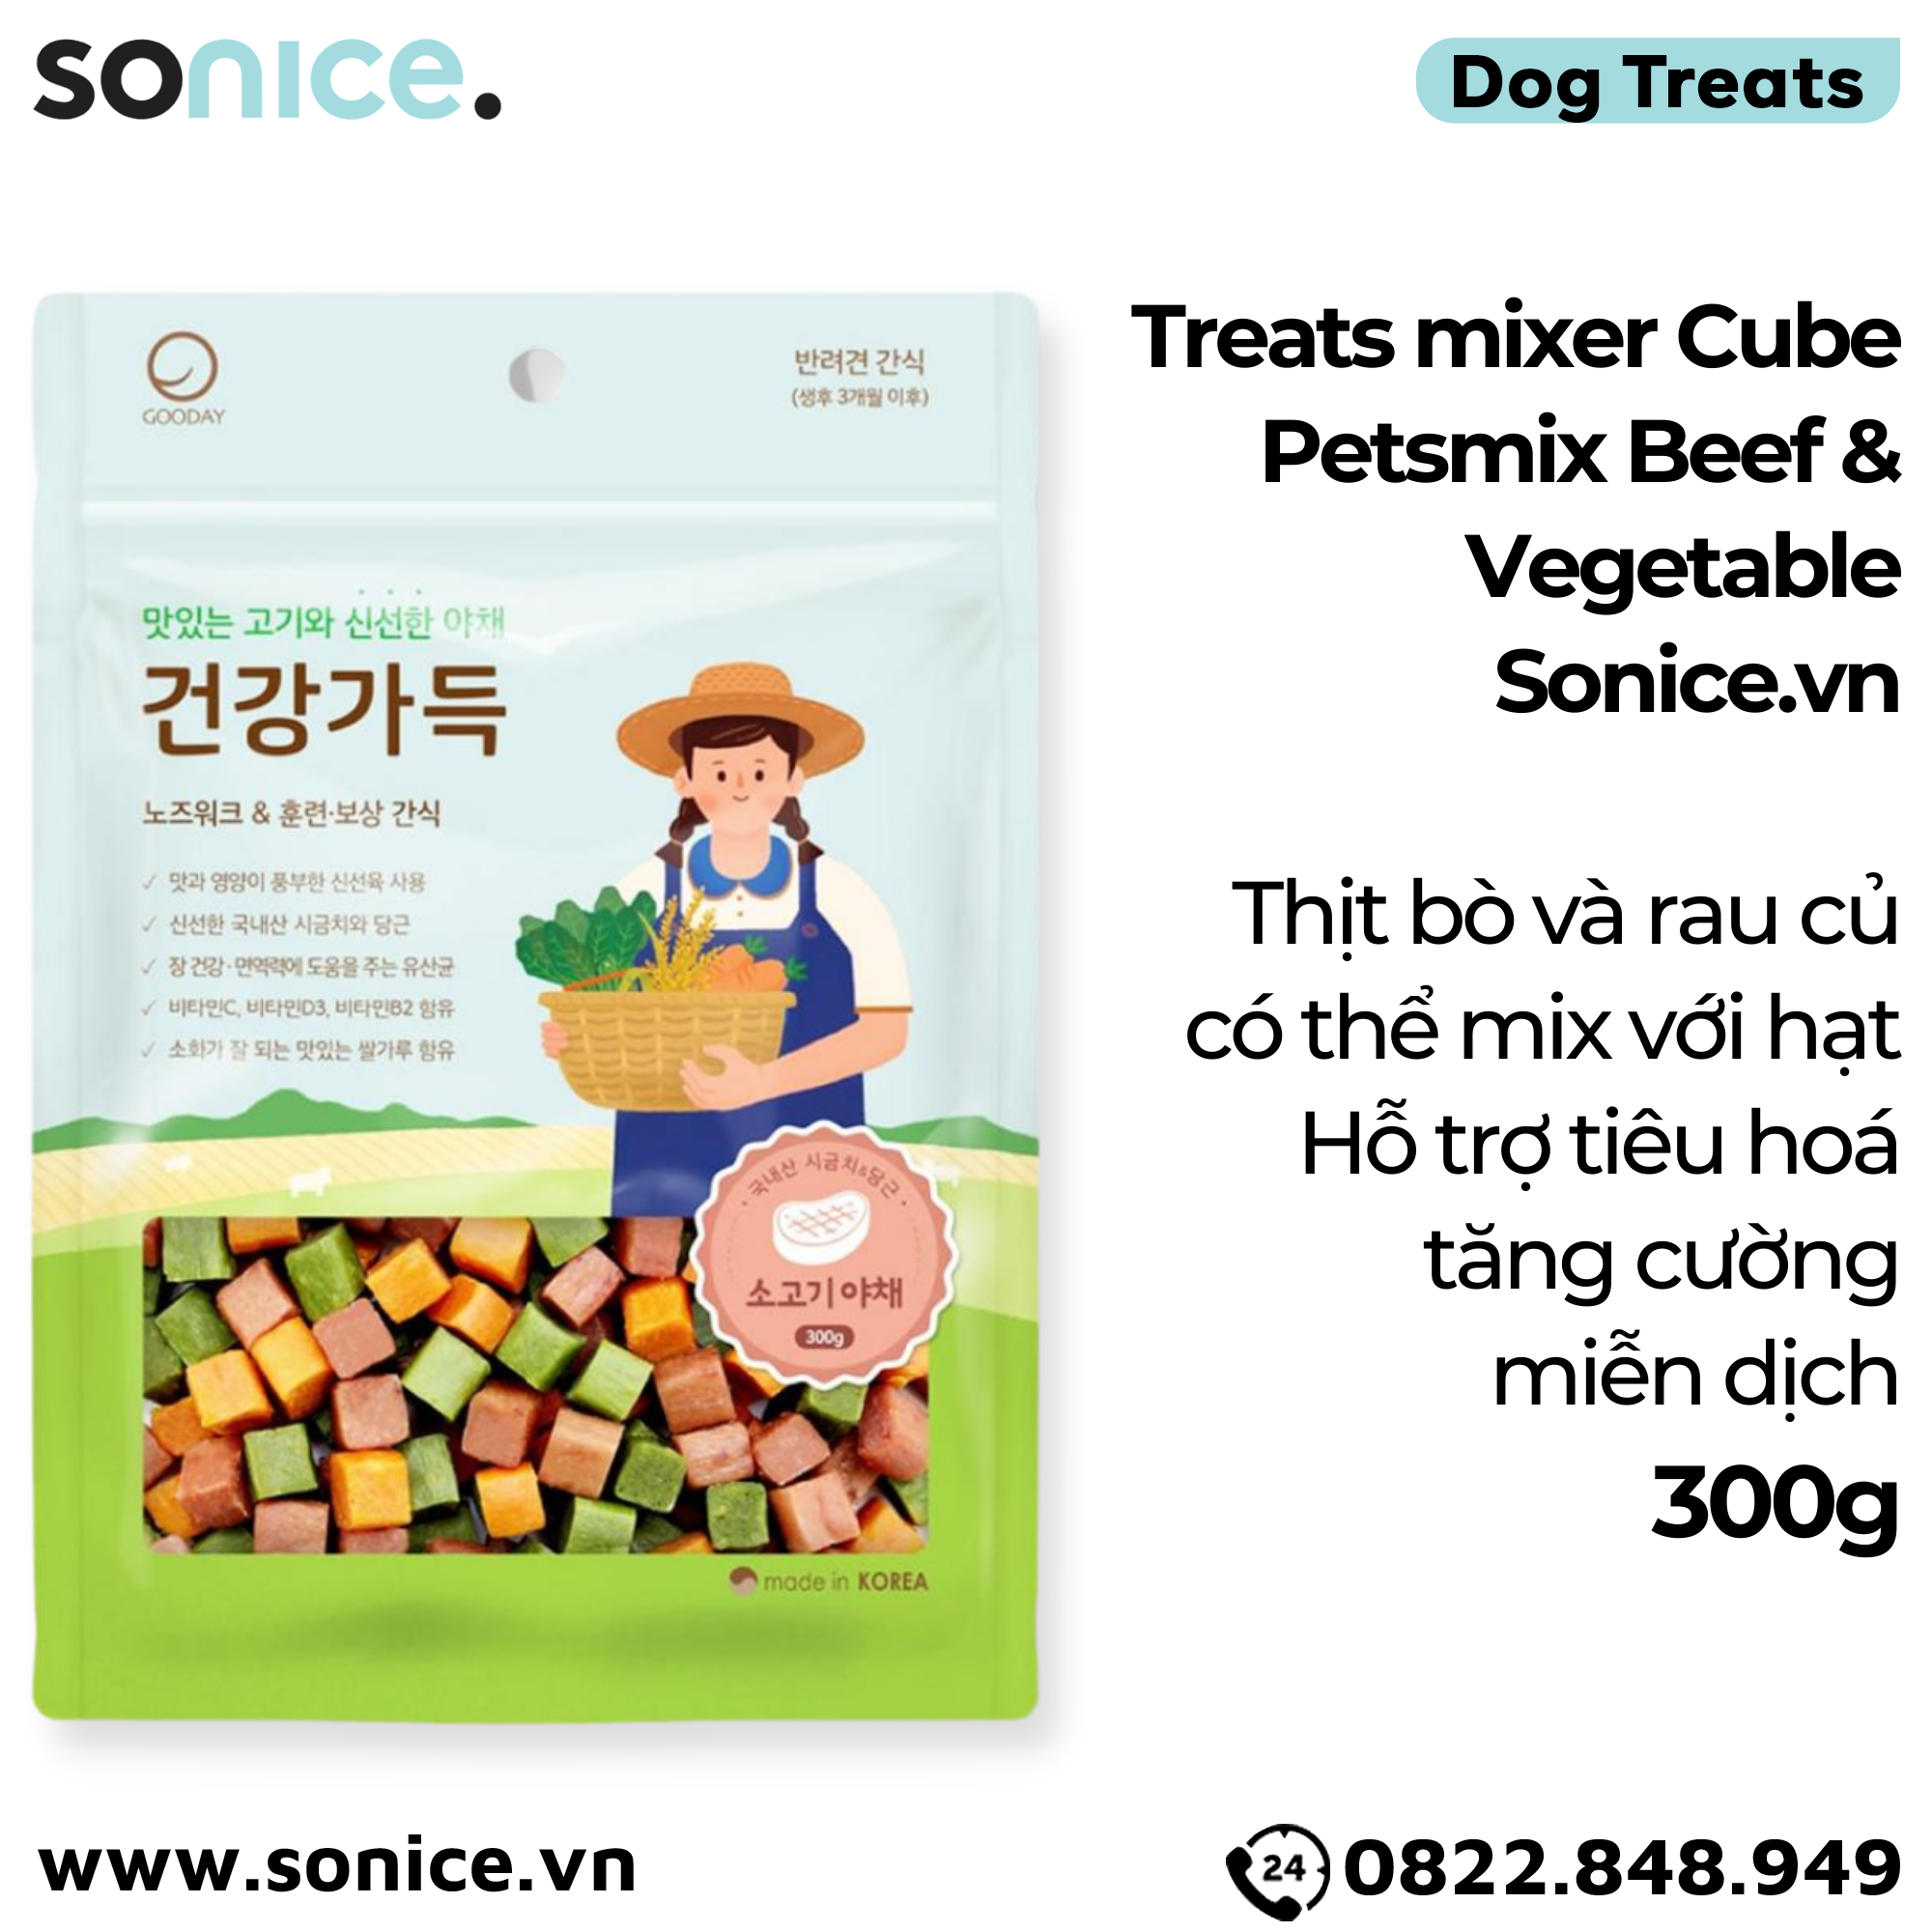  Treats mixer Cube Petsmix Beef & Vegetable 300g Korea - Thịt bò và rau củ, có thể mix với hạt, hỗ trợ tiêu hoá, tăng cường miễn dịch SONICE. 